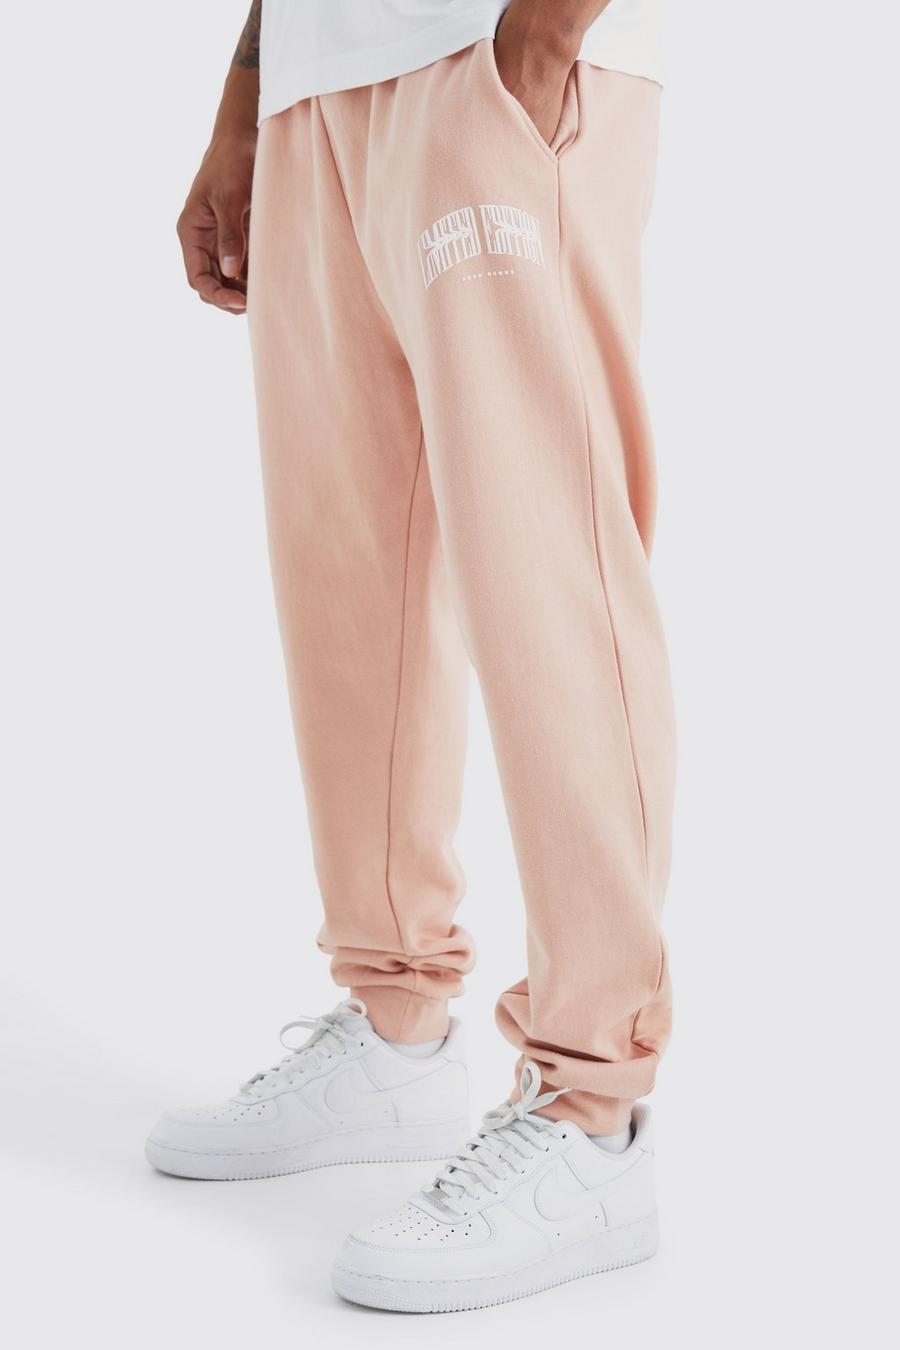 Pantalón deportivo oversize con estampado gráfico Limited Edition, Dusty pink